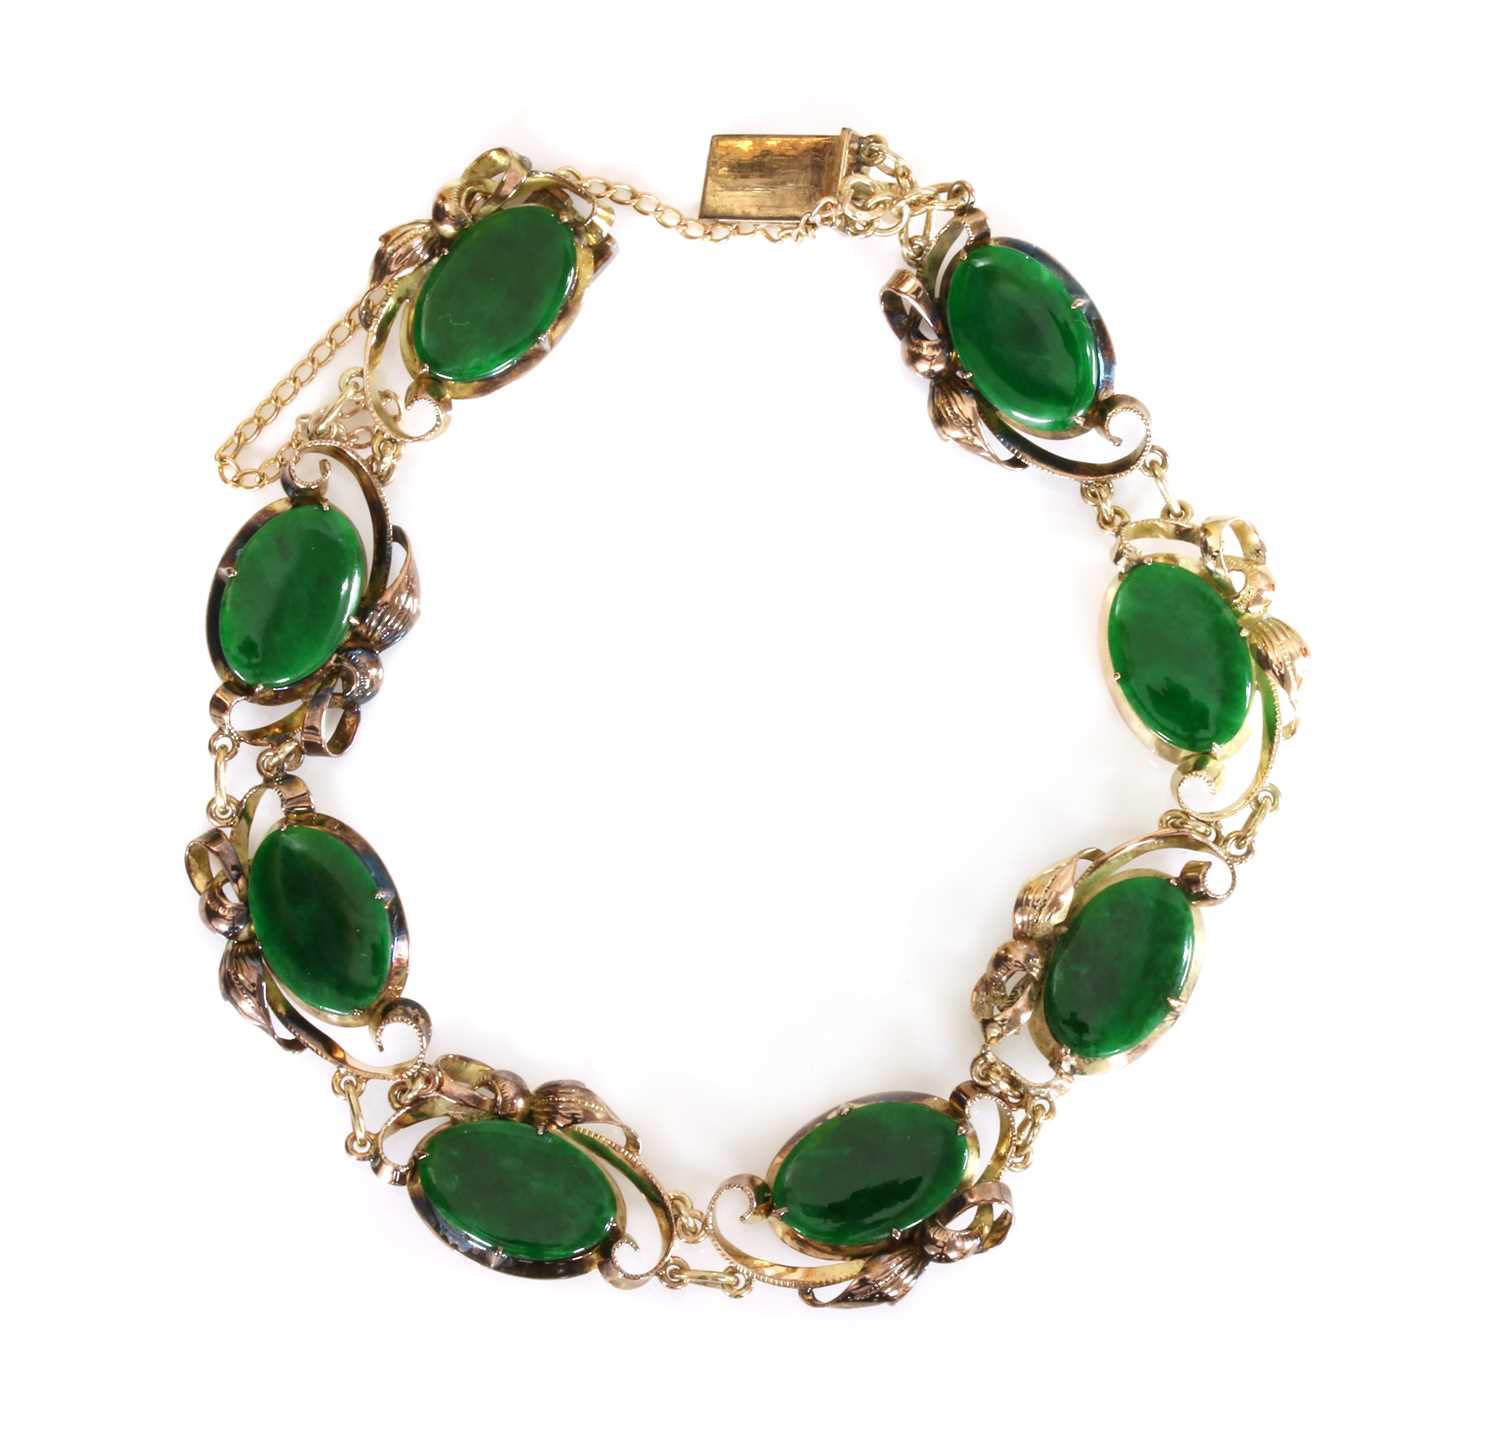 Lot 181 - A jade bracelet, c.1950